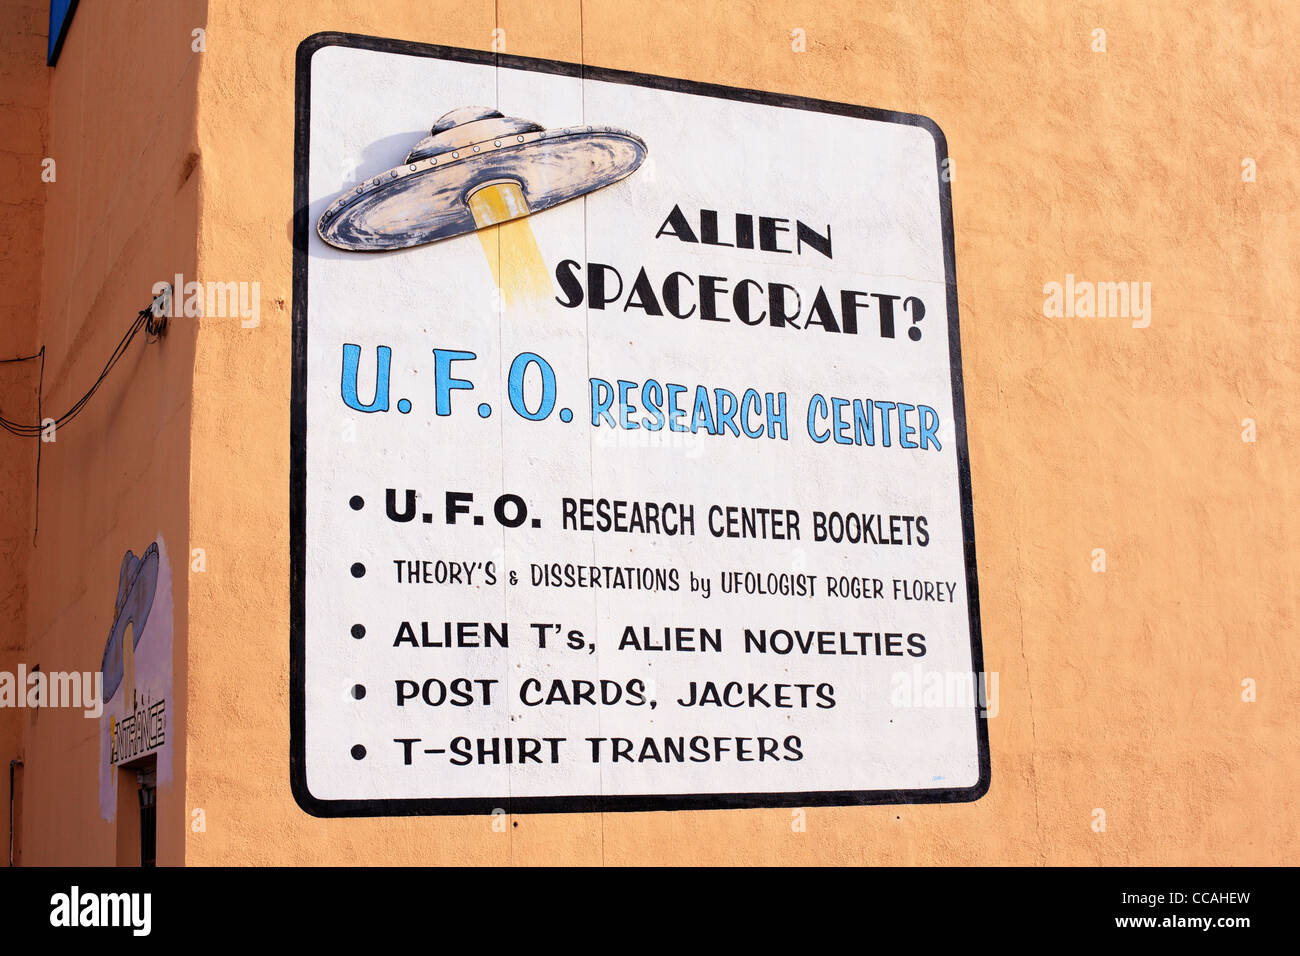 U.F.O Research Center Accedi Roswell, New Mexico. Foto Stock